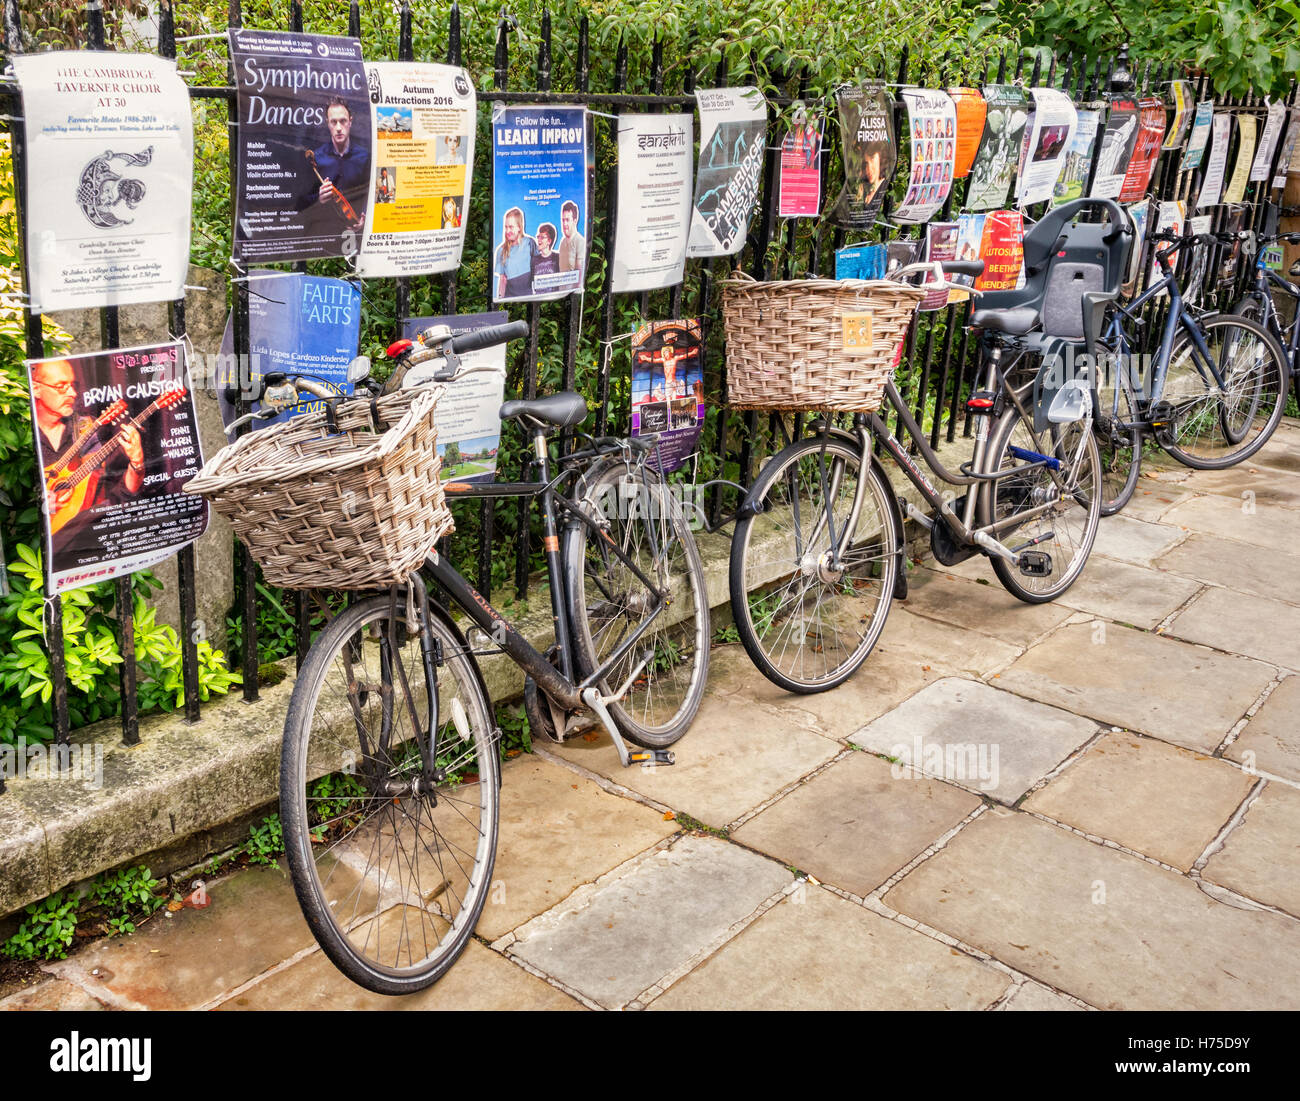 Cambridge-Fahrräder an einen Zaun gelehnt bedeckt in Plakate, England, UK Stockfoto